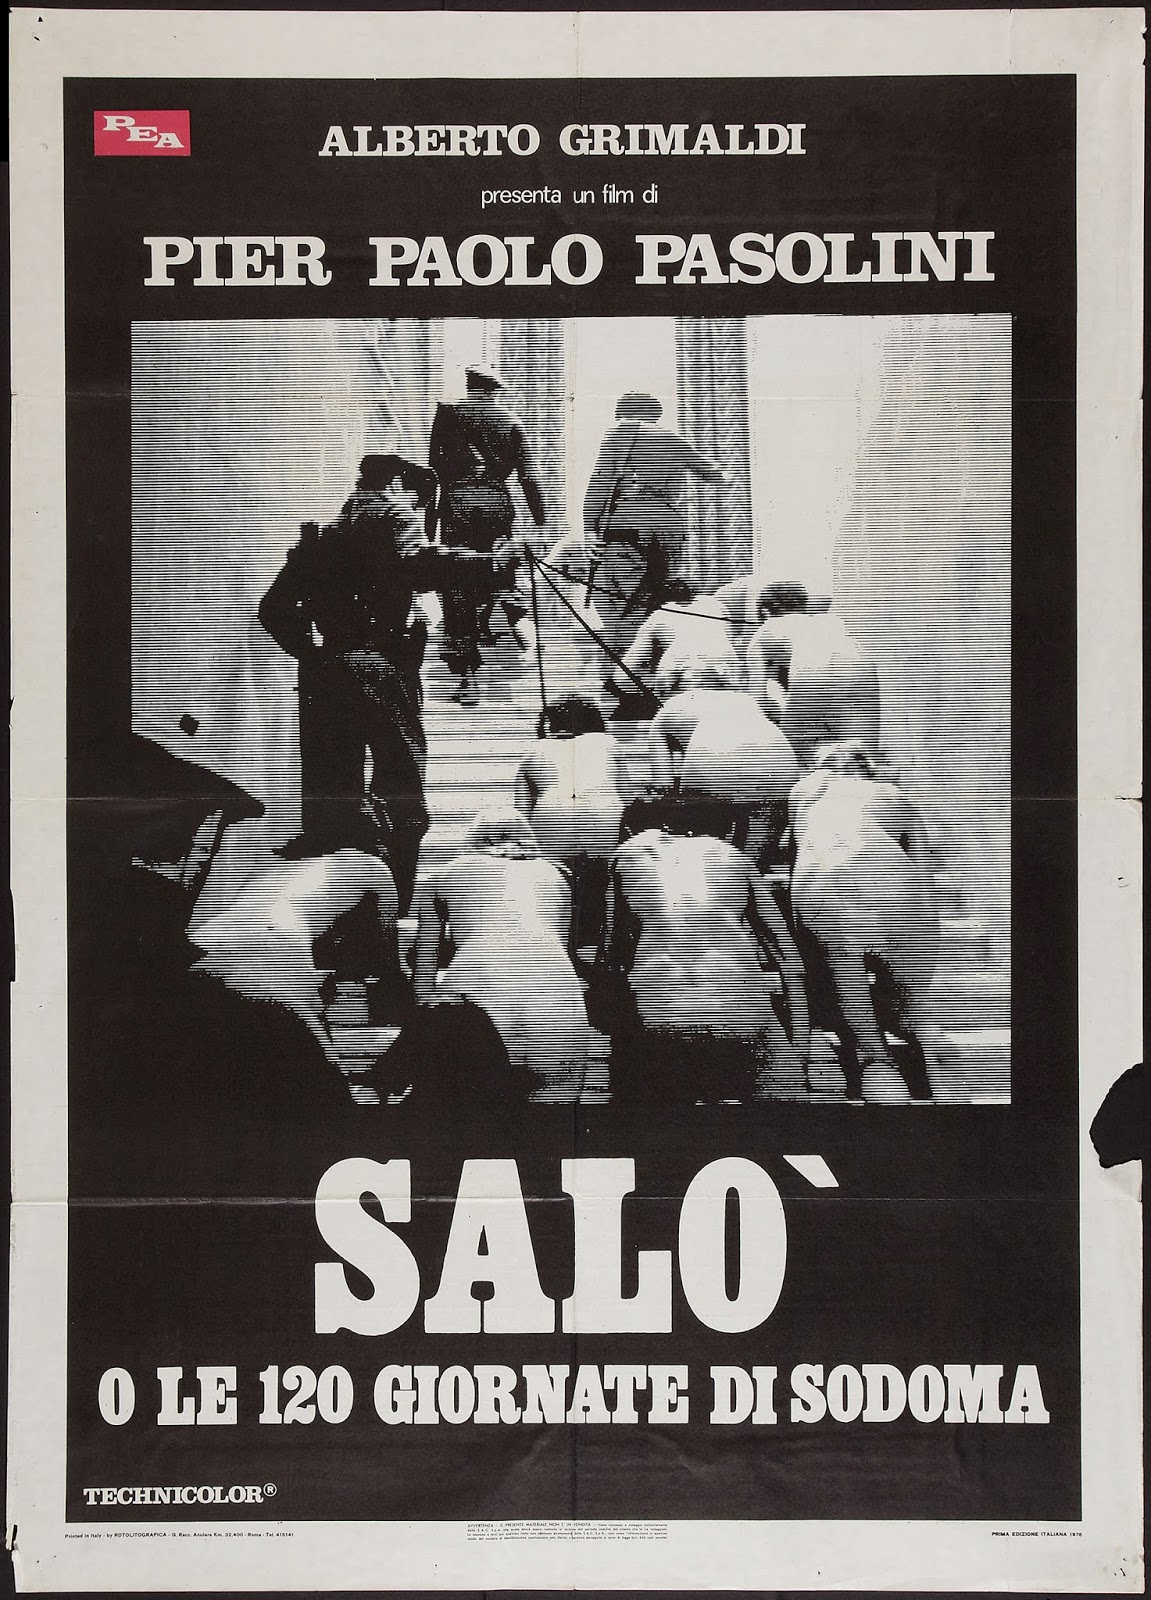 SALO, O LE 120 GIORNATE DI SODOMA - Italian Poster 1.jpeg